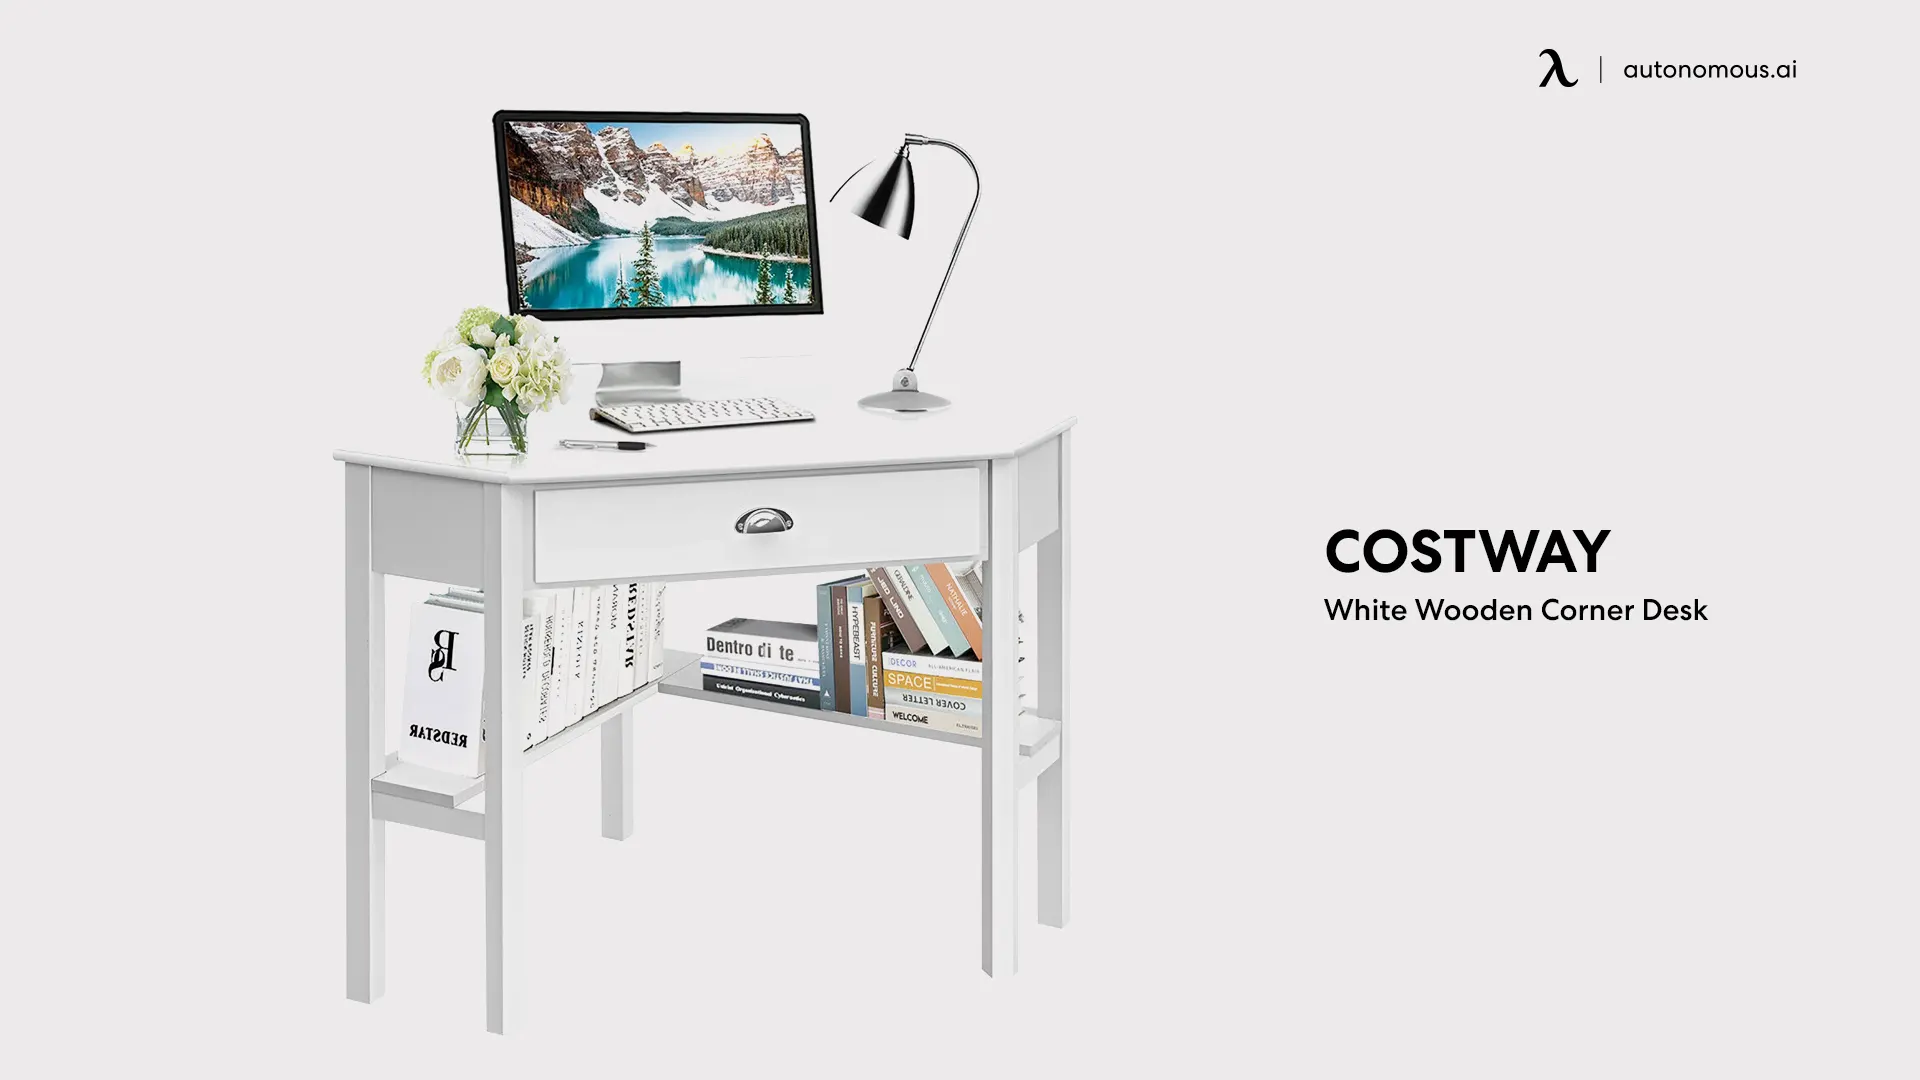 Costway’s White Wooden Corner Desk